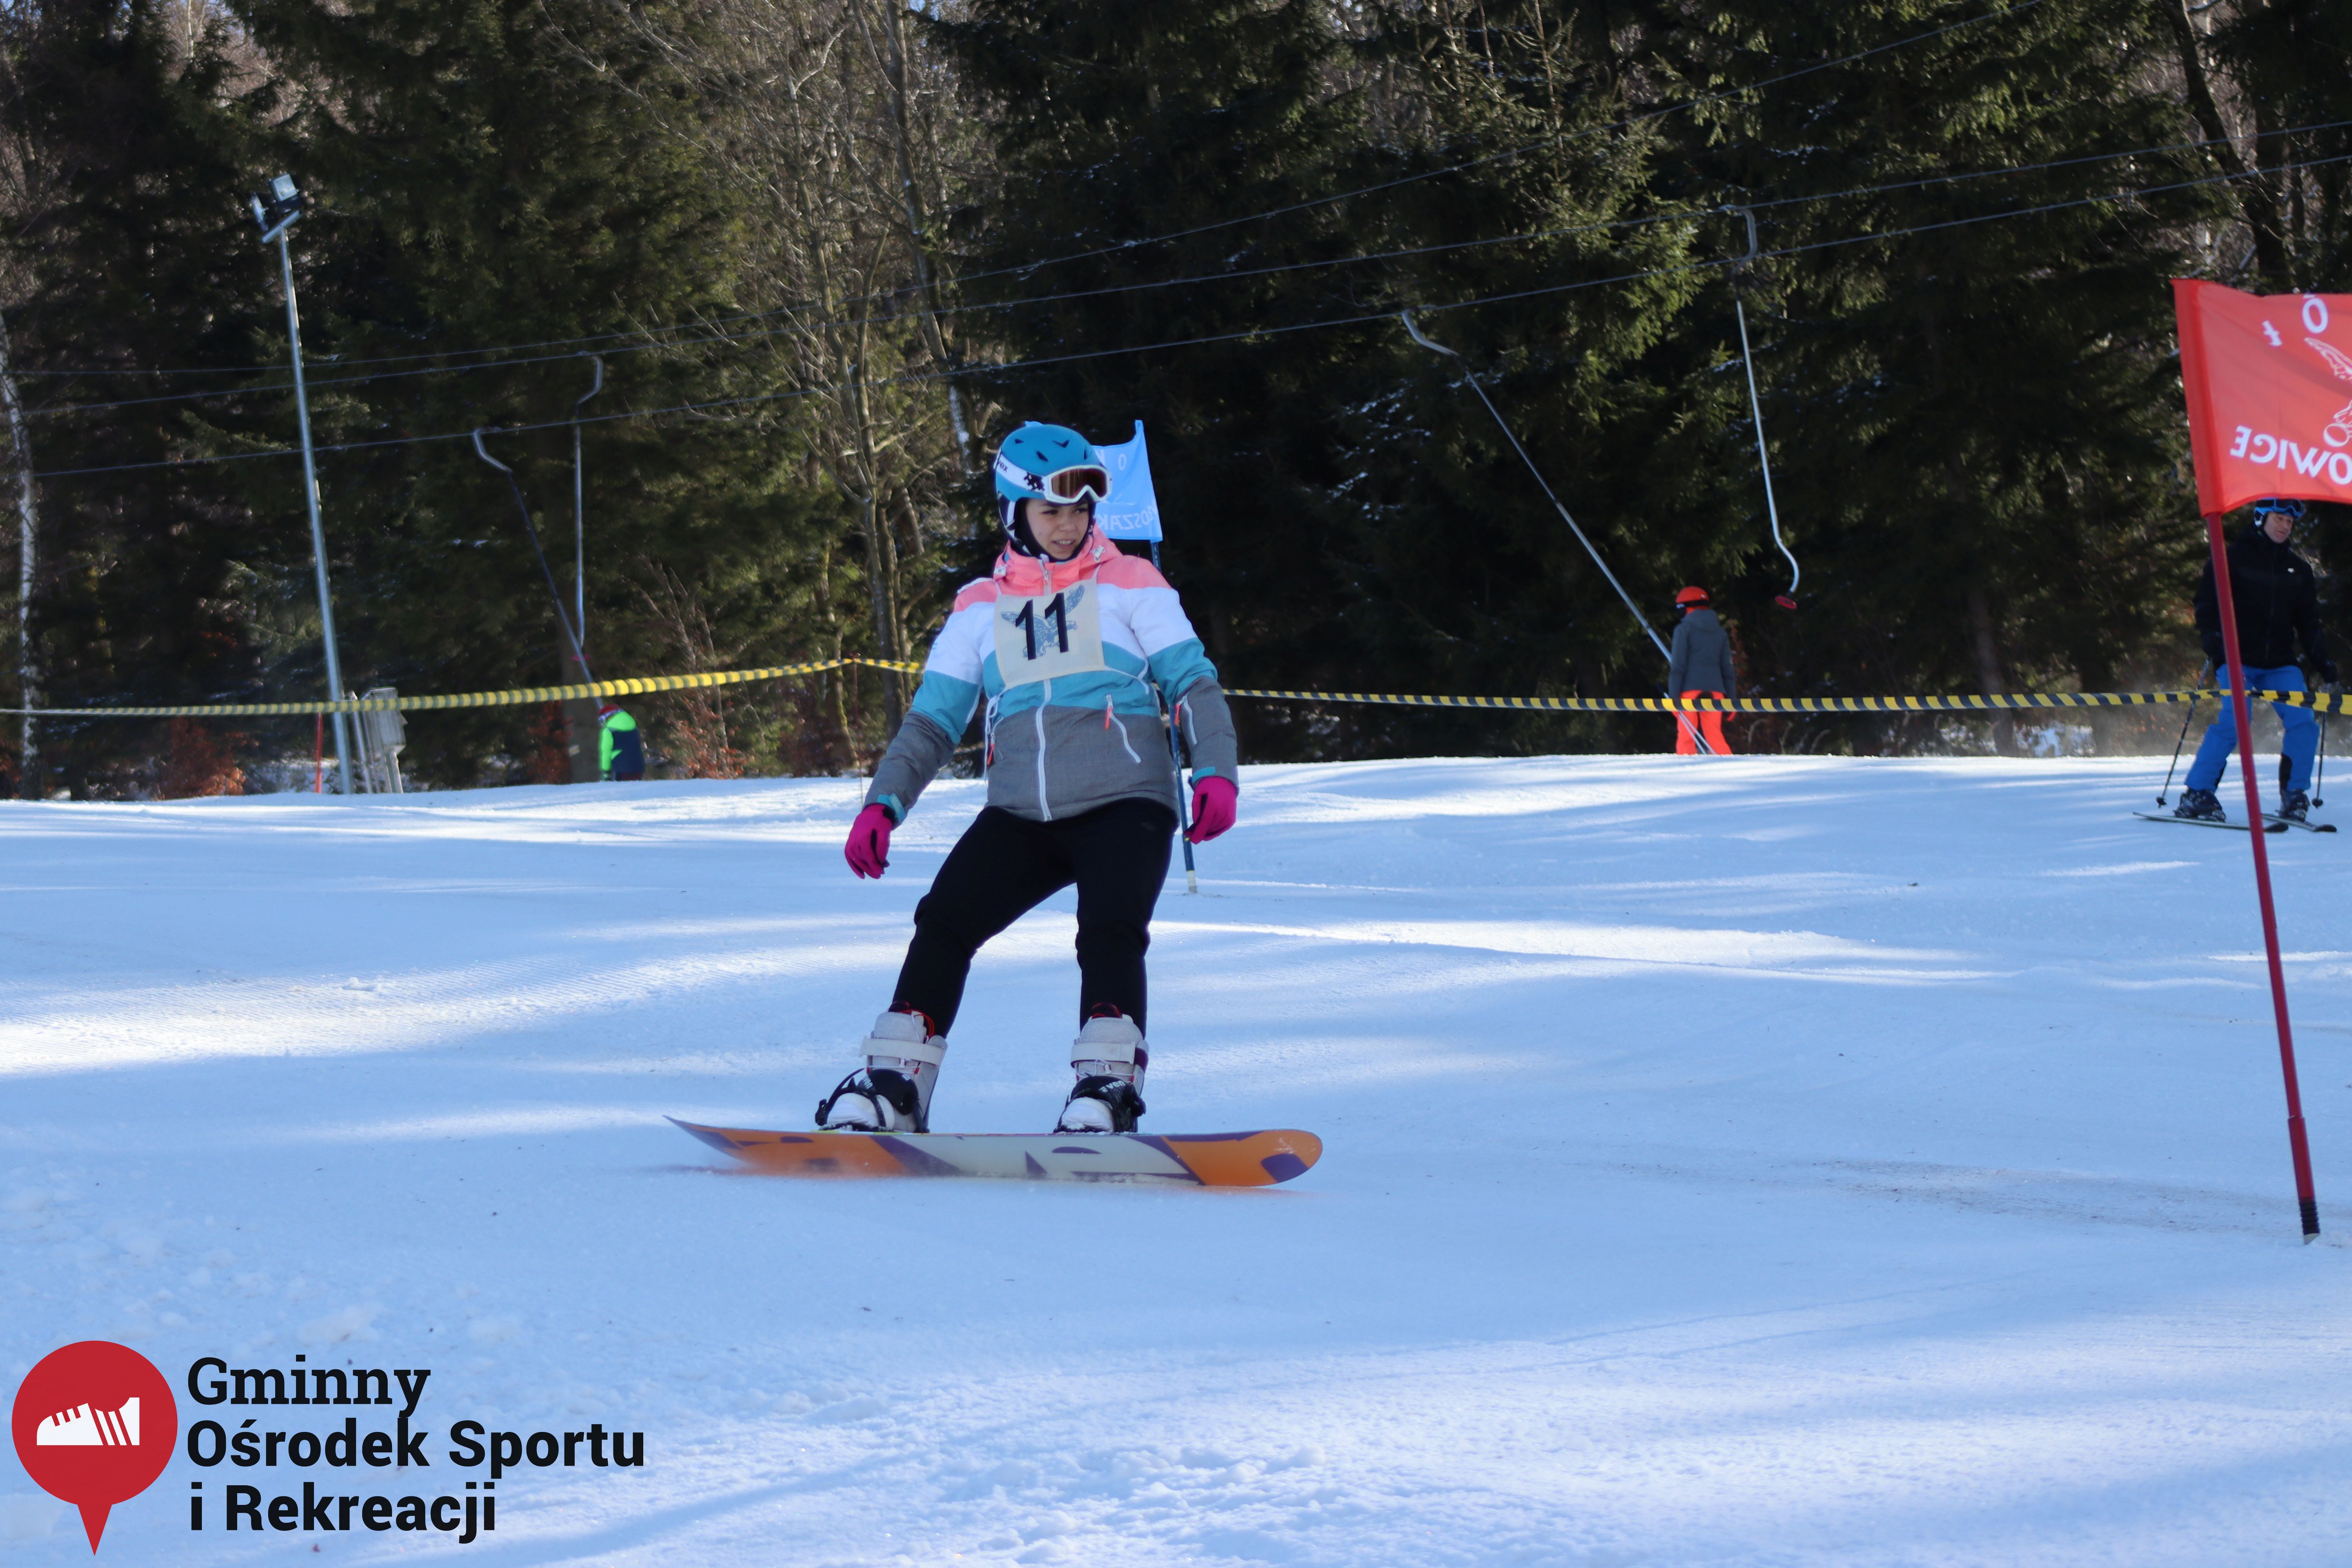 2022.02.12 - 18. Mistrzostwa Gminy Woszakowice w narciarstwie047.jpg - 1,82 MB